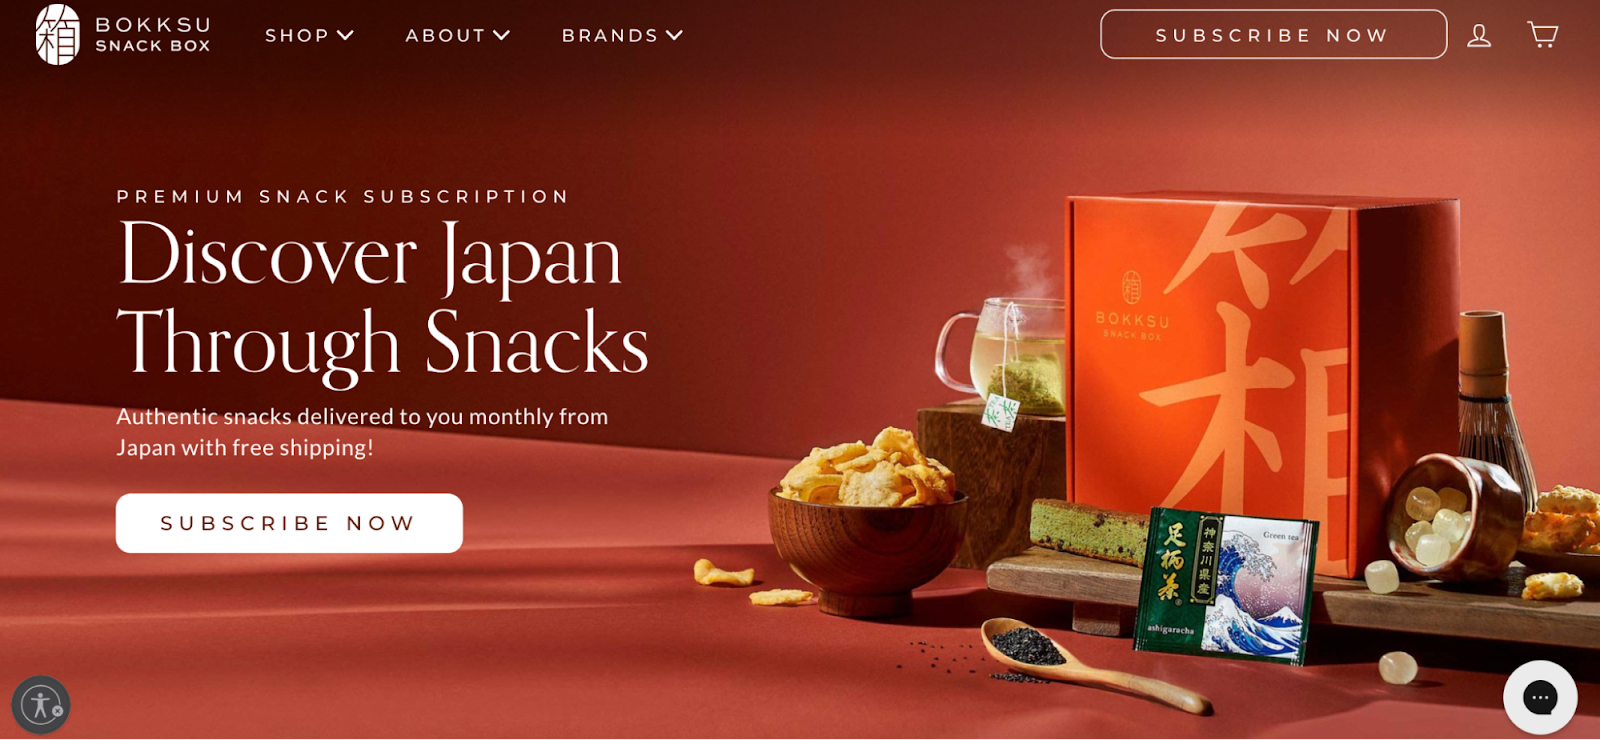 الصفحة الرئيسية لـ Bokksu Snack Box، والتي تعرض مثالاً للاشتراكات كفكرة للأعمال التجارية عبر الإنترنت.